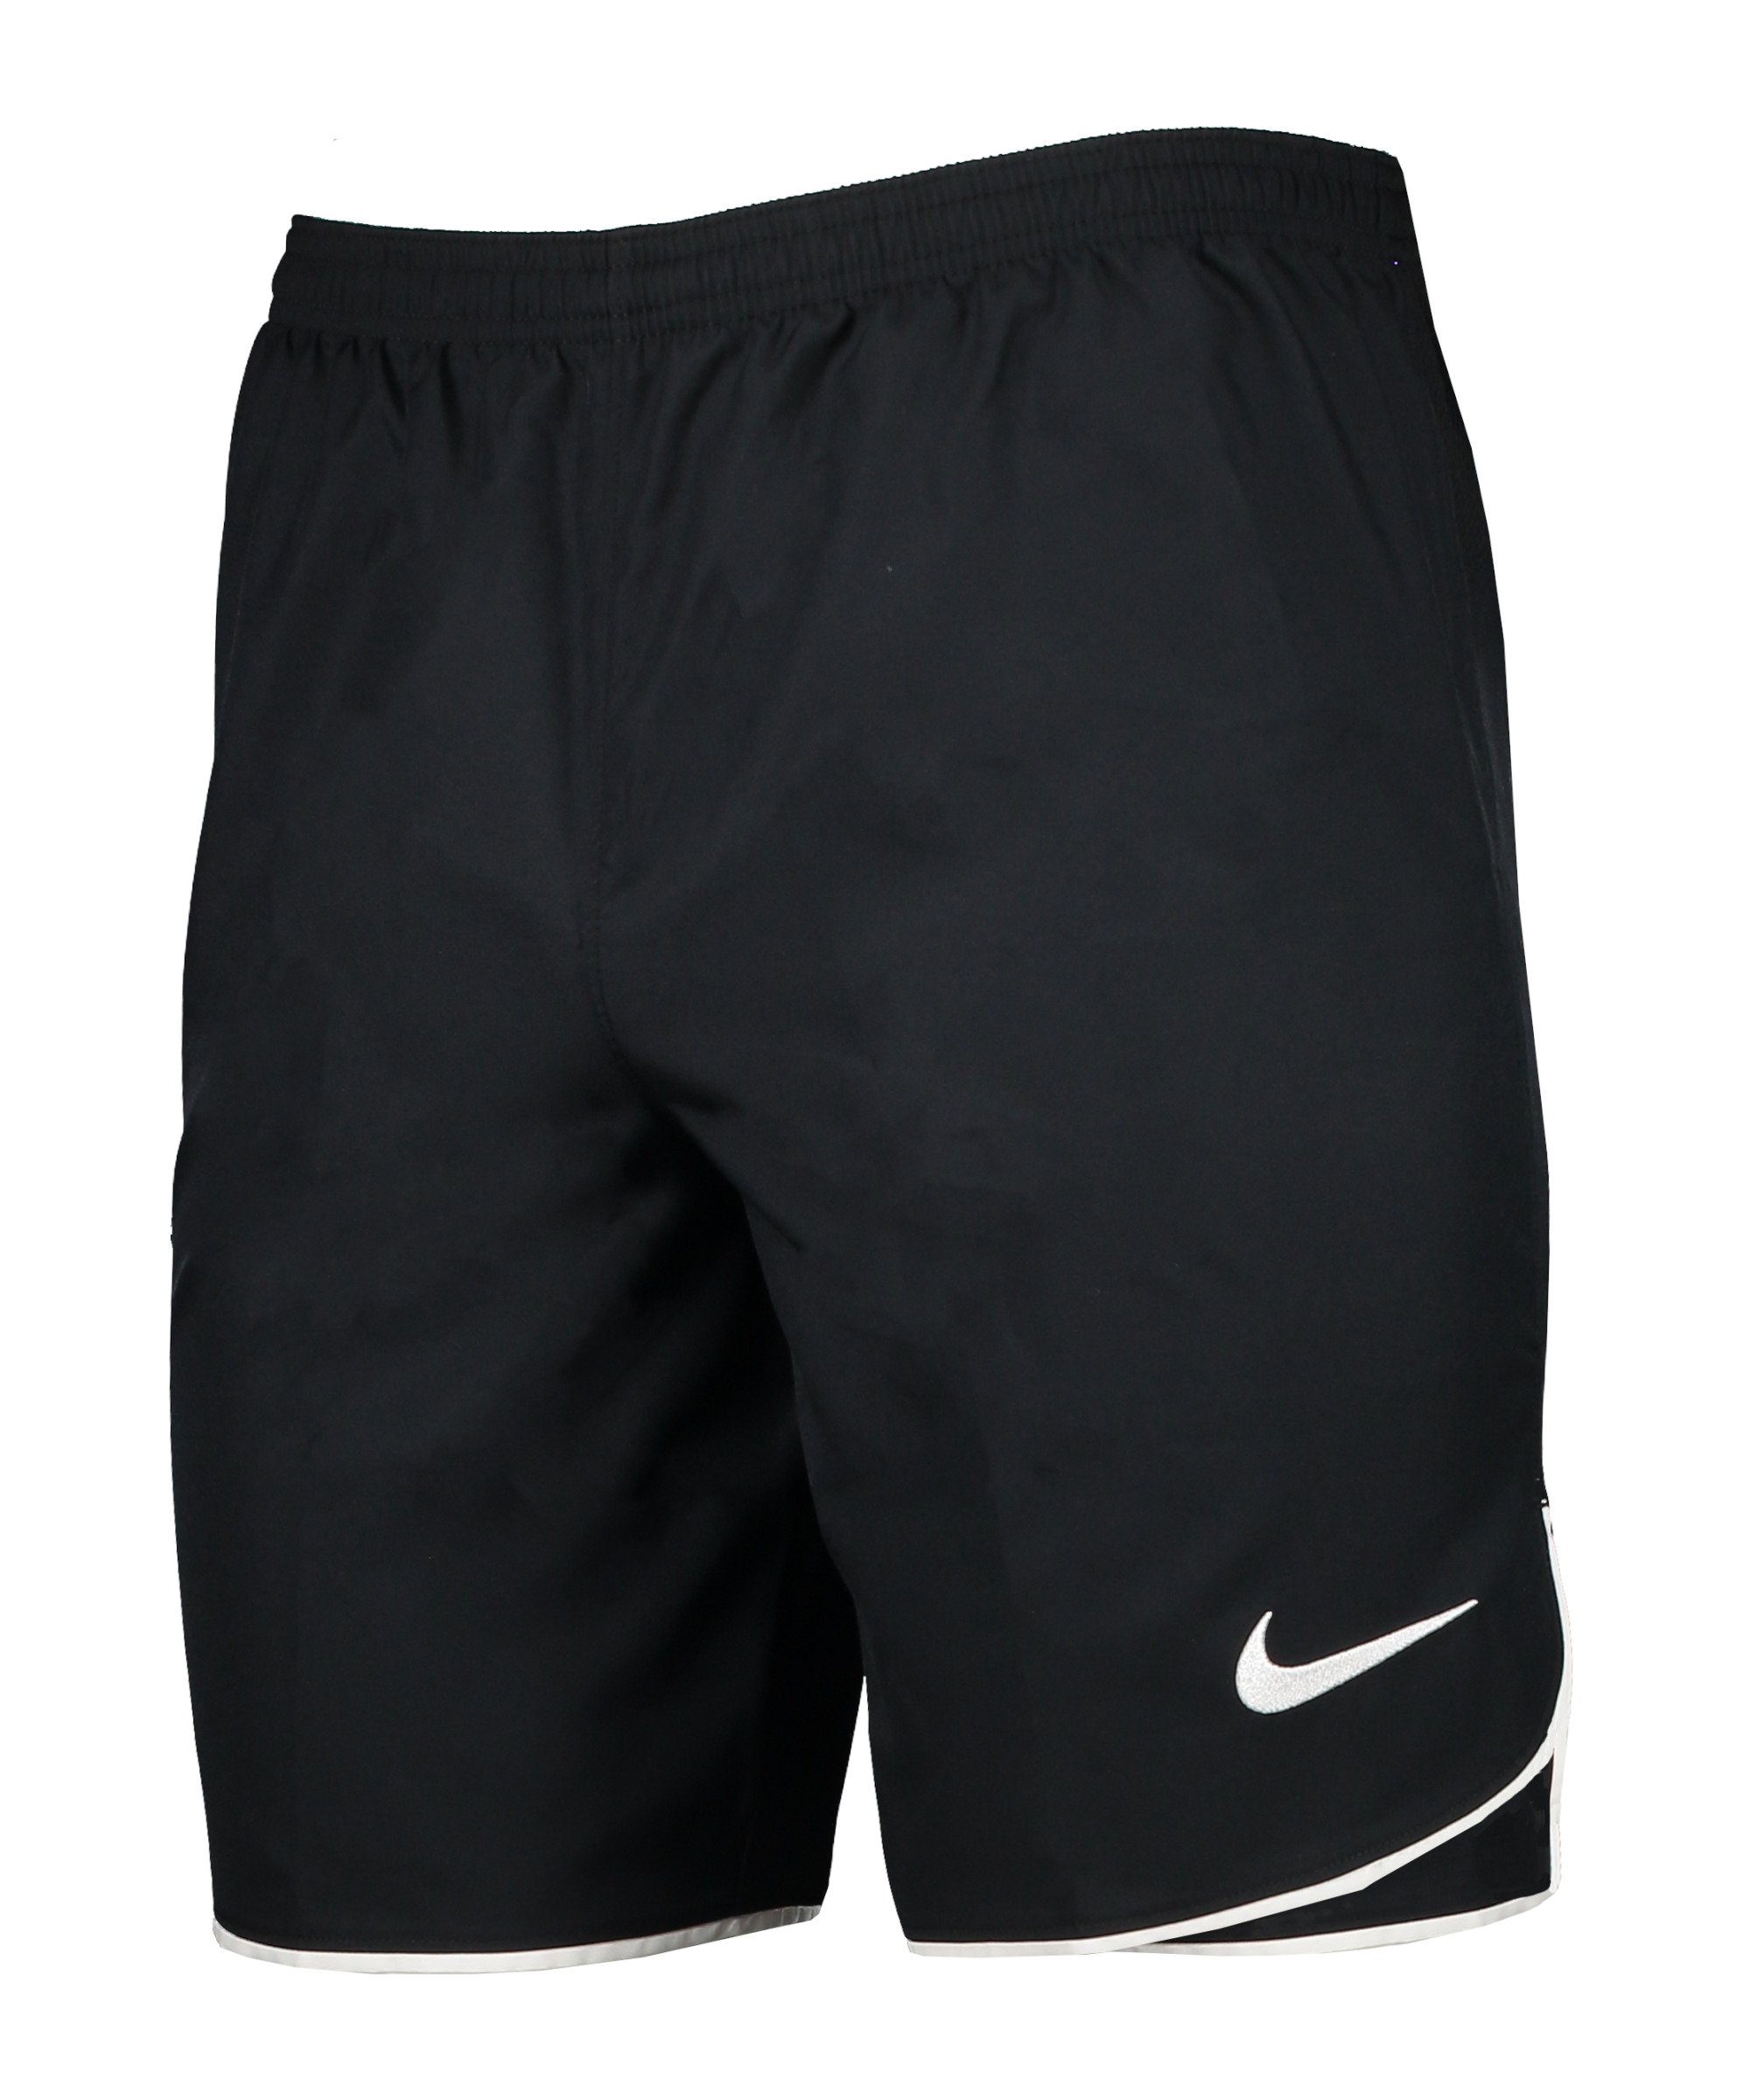 Woven Laser schwarzweiss Sporthose Nike V Short